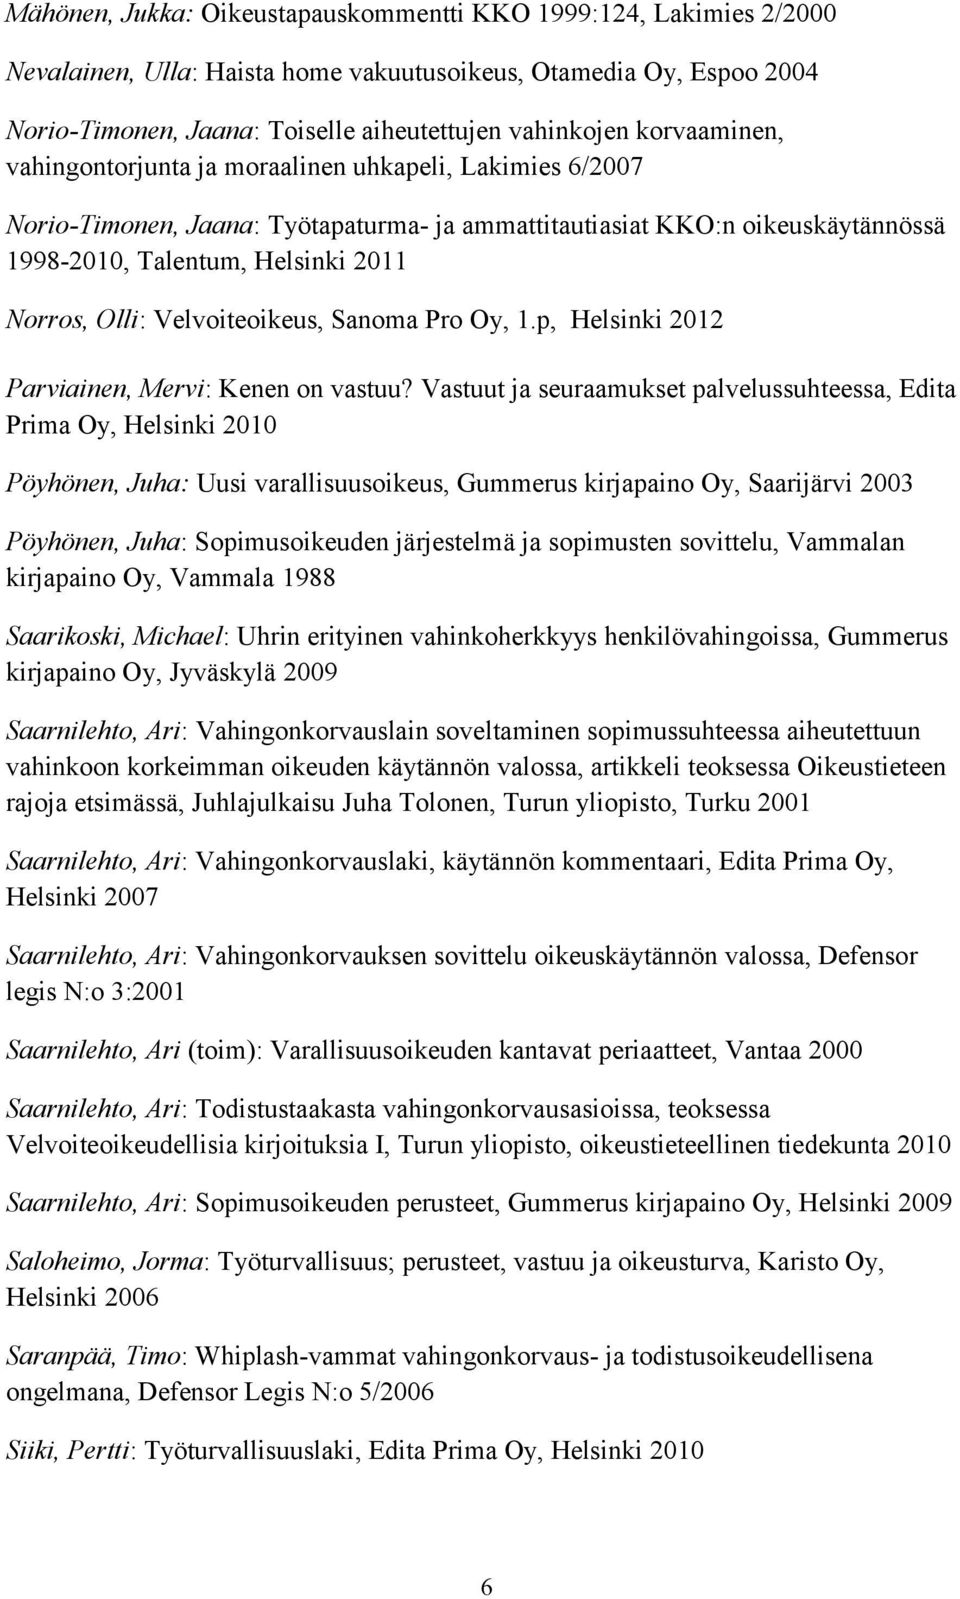 Velvoiteoikeus, Sanoma Pro Oy, 1.p, Helsinki 2012 Parviainen, Mervi: Kenen on vastuu?